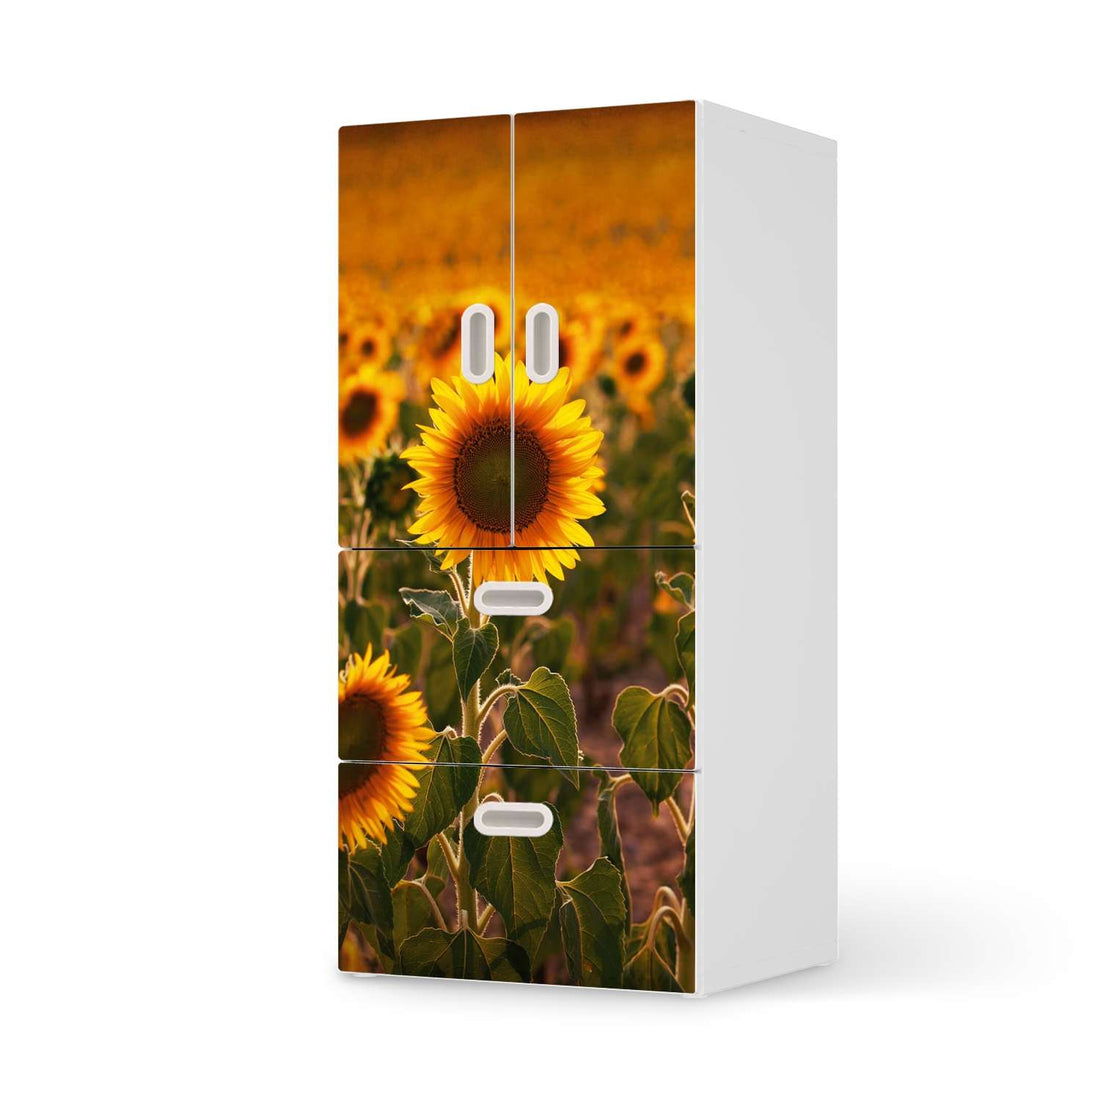 Möbelfolie Sunflowers - IKEA Stuva / Fritids kombiniert - 2 Schubladen und 2 kleine Türen  - weiss